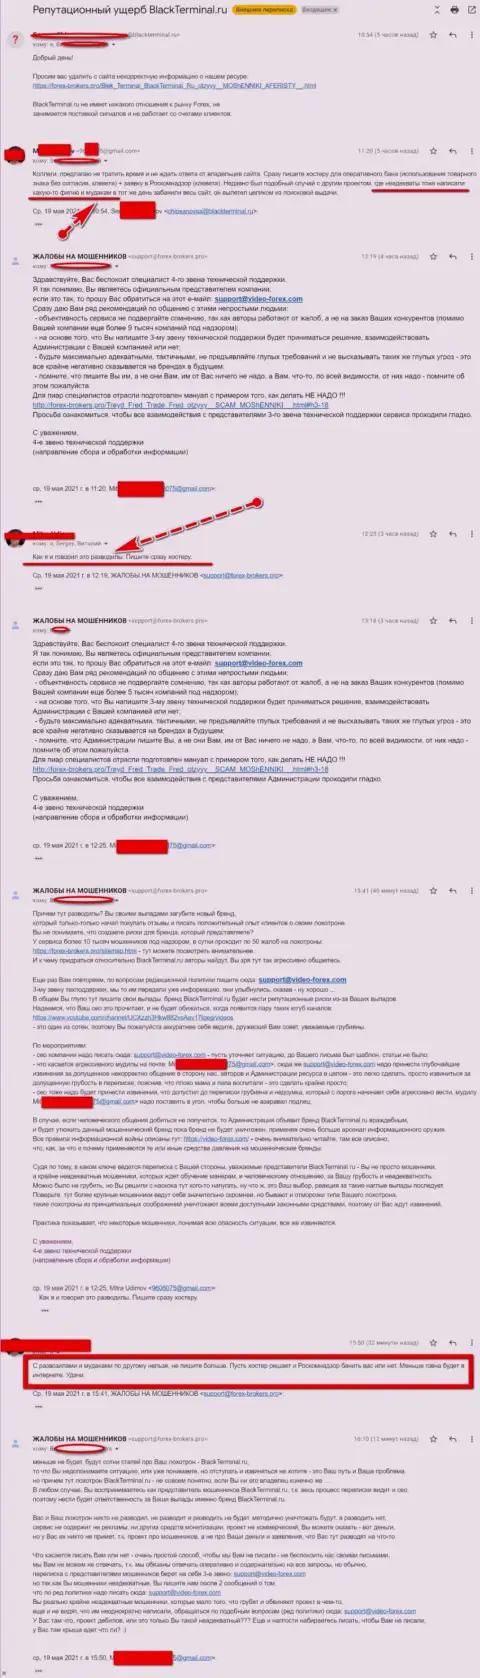 Переписка Администрации сайта, с отзывами об BlackTerminal Ru, с представителями данного мошеннического онлайн-сервиса